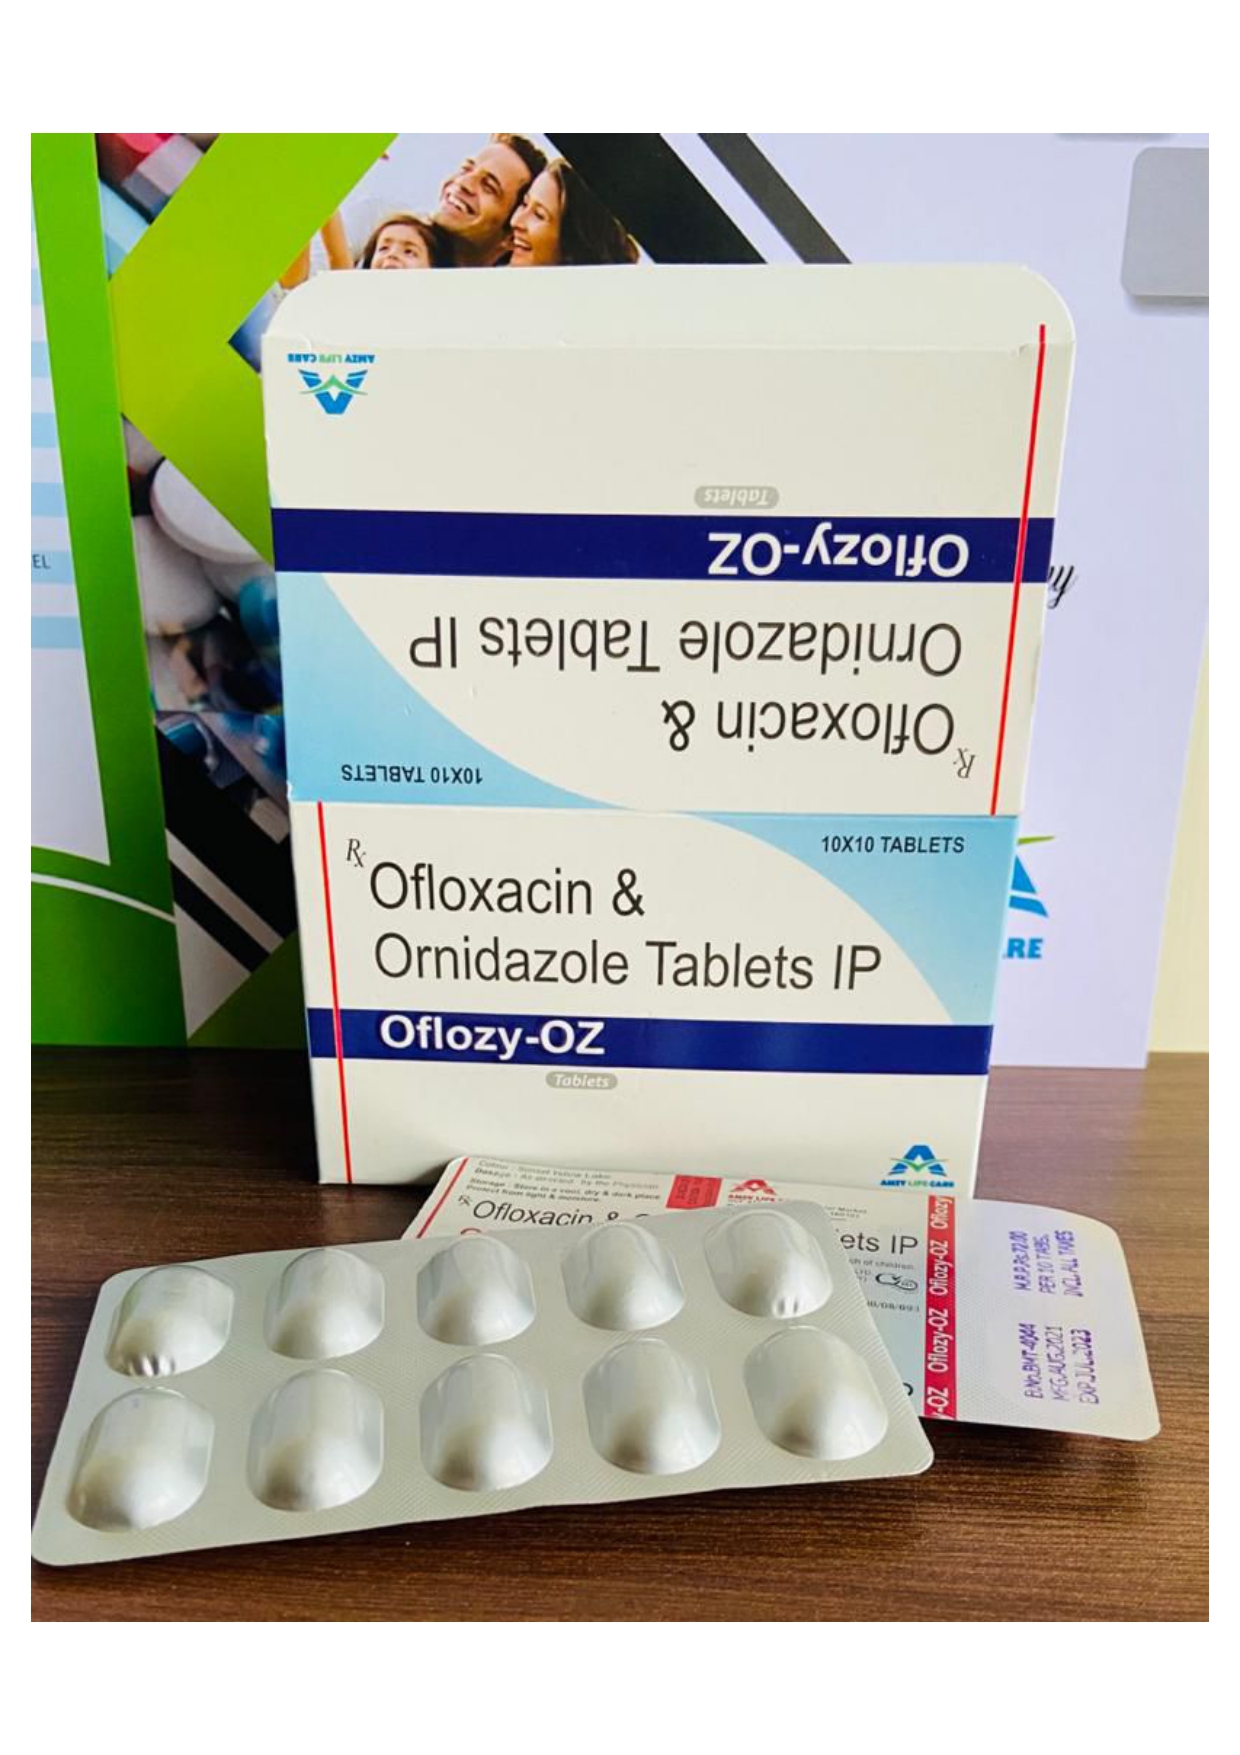 ofloxacin 200 mg + ornidazole 500 mg tab